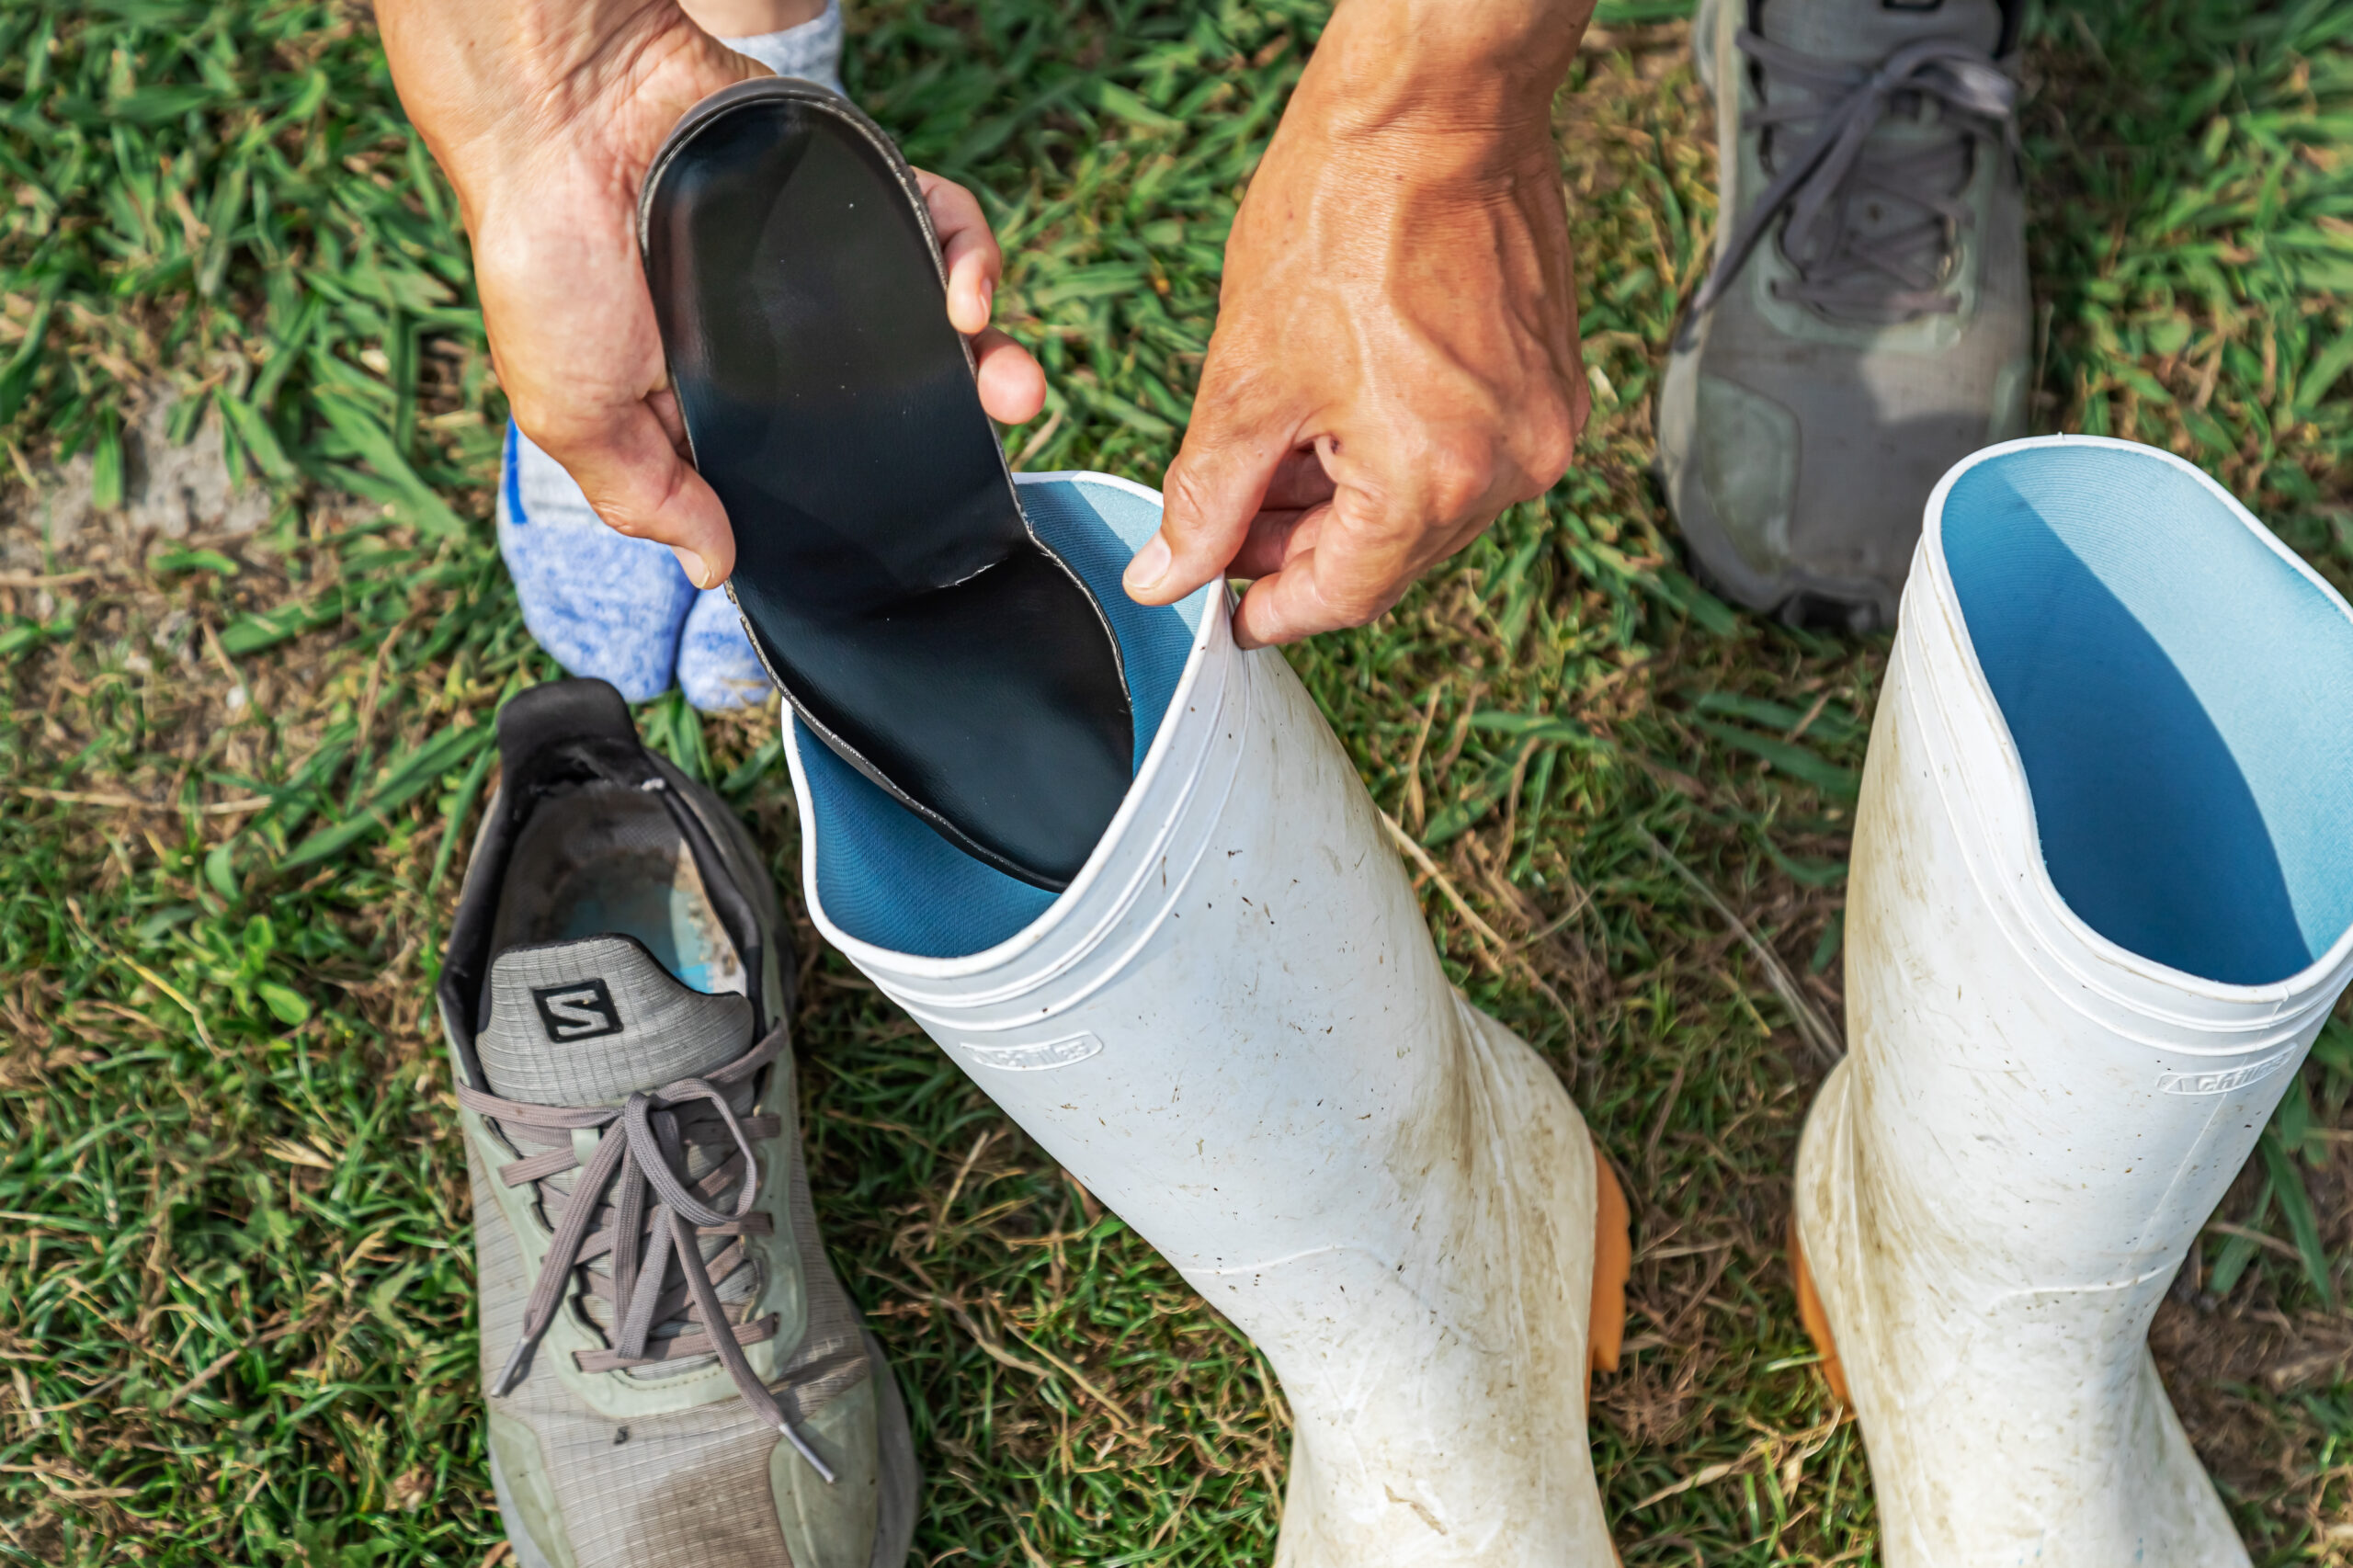 農作業には長靴が必須。作業のたびに普段履いているシューズから長靴へと『Northwest Superglass®』を入れ替えることで作業時の腰の負担を和らげてくれる